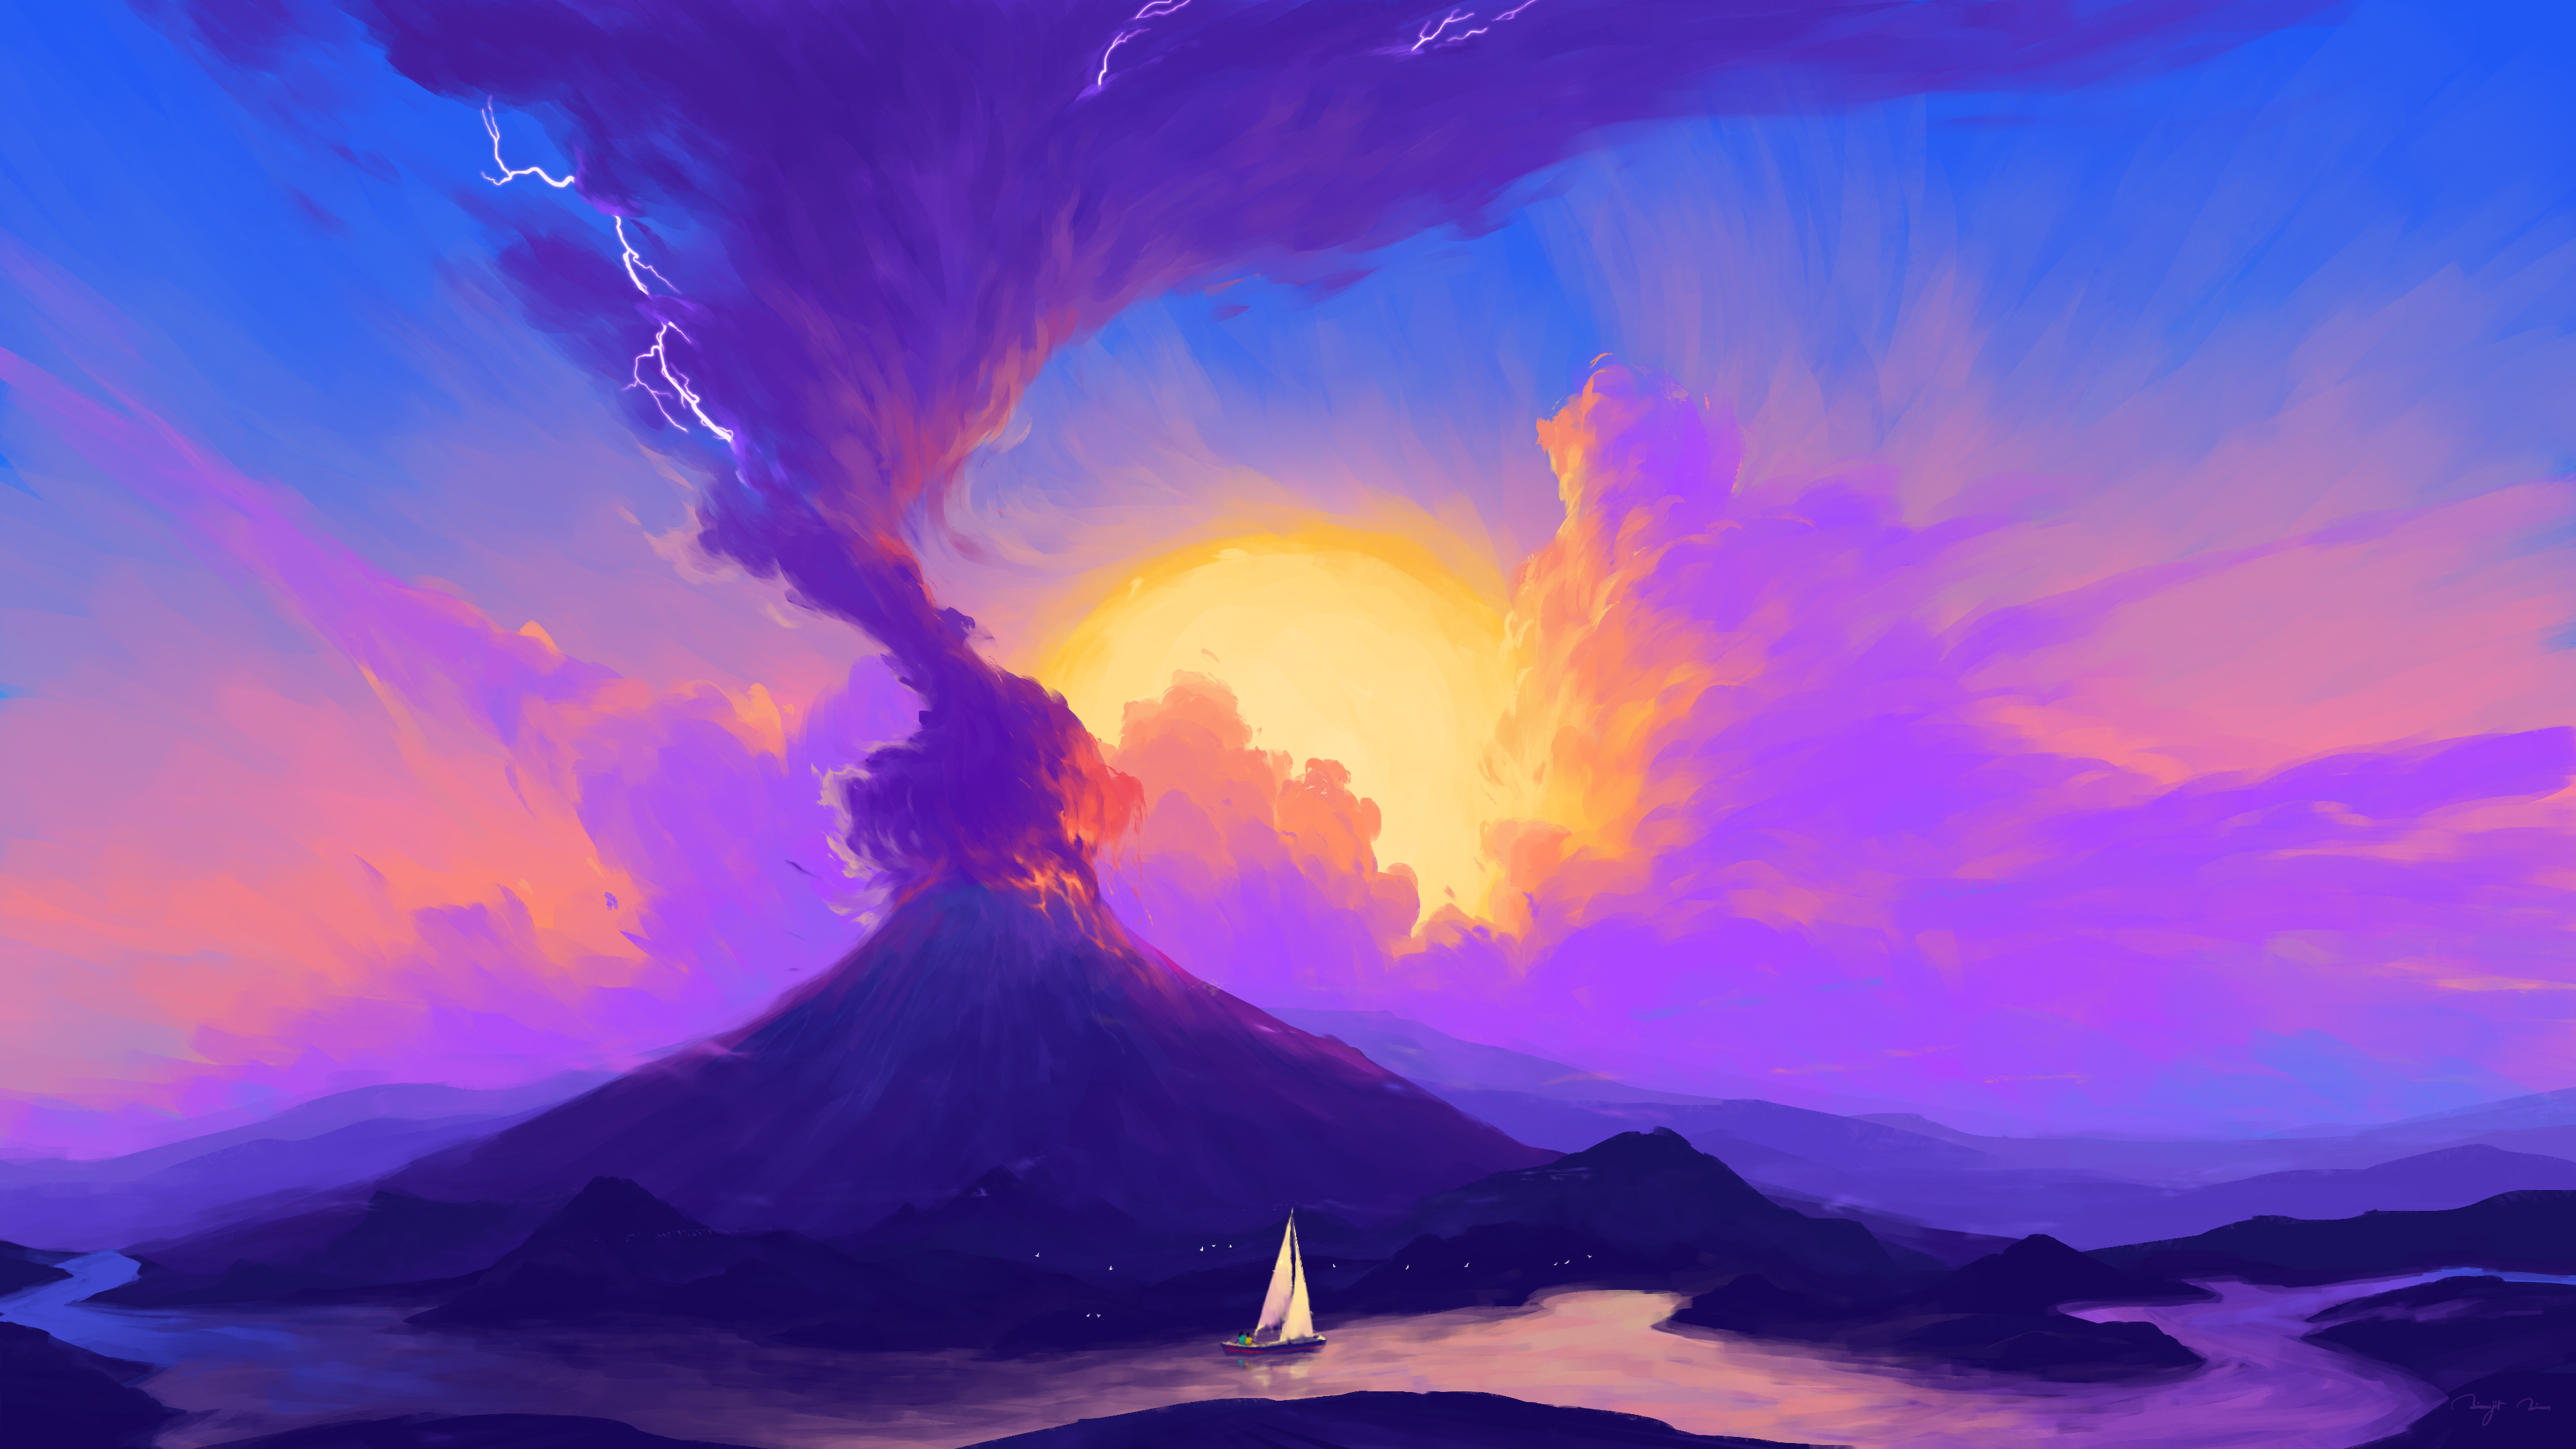 General 3840x2160 BisBiswas digital art artwork illustration volcanic eruption volcano landscape clouds ship boat nature 4K river Sun sky signature